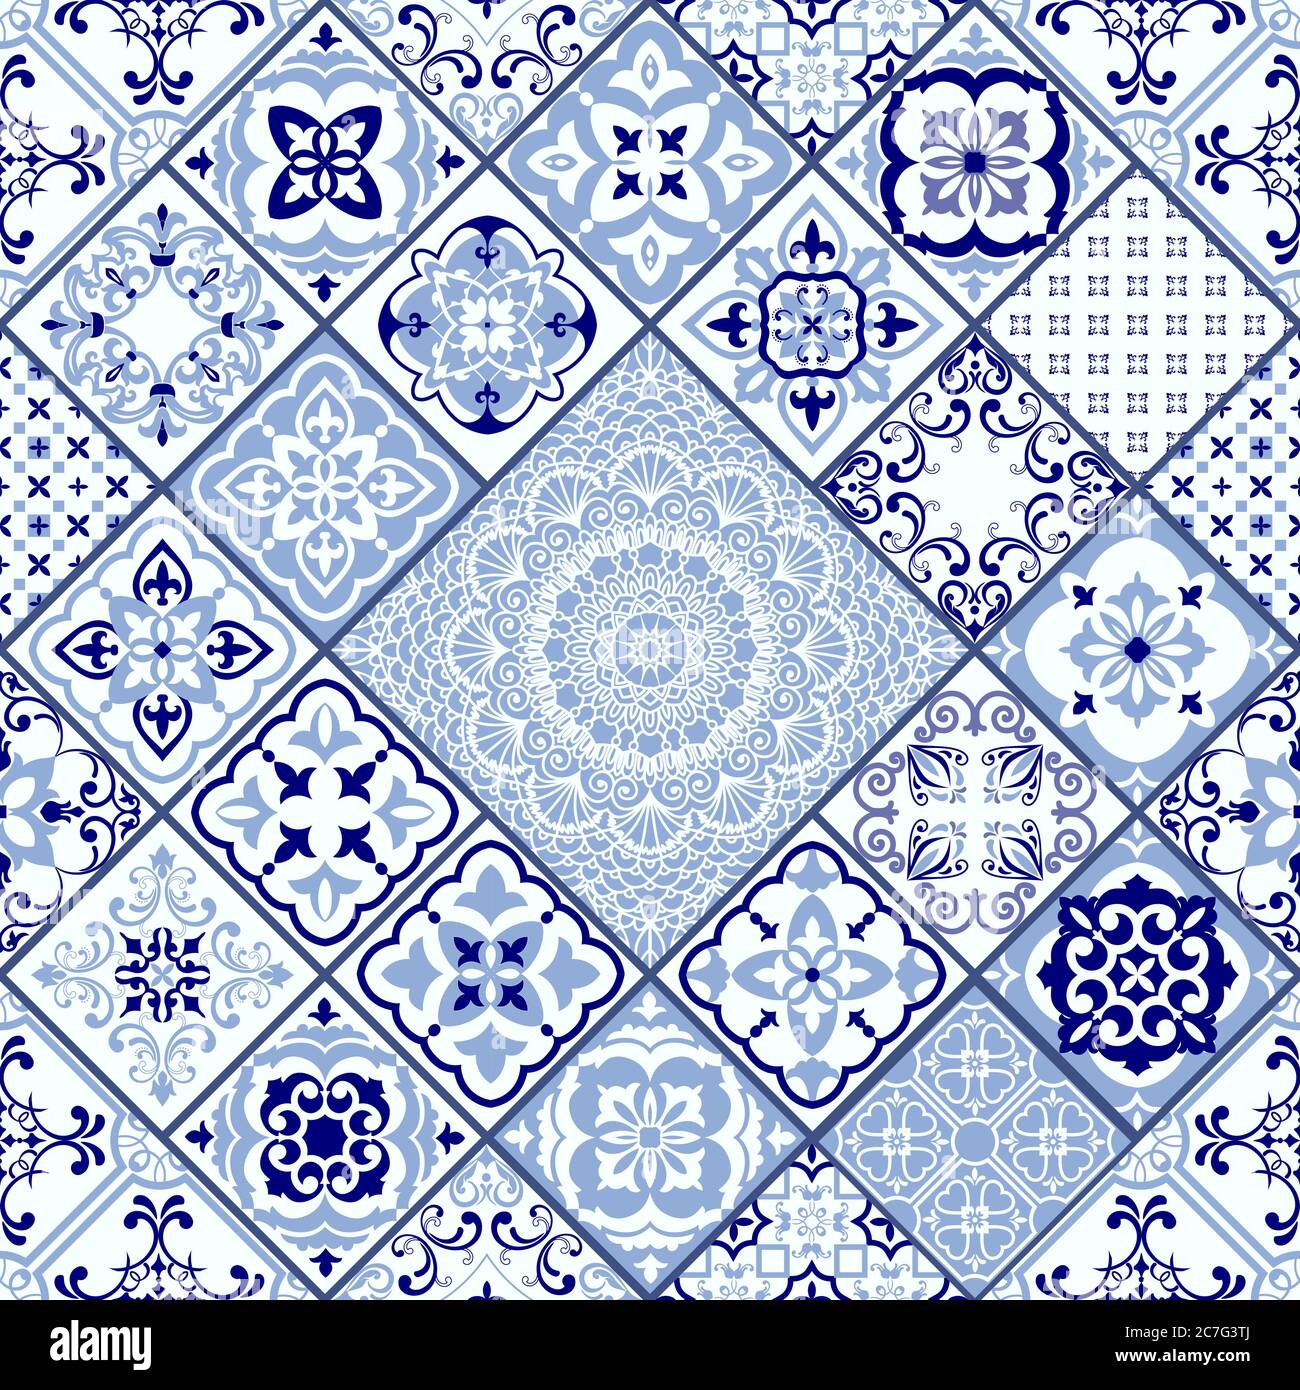 Nahtlose Patchwork-Fliese mit viktorianischen Motiven. Majolika-Keramikfliesen, blaue und weiße Azulejo, original traditionelle portugiesische und spanische Einrichtung. Vektor Stock Vektor